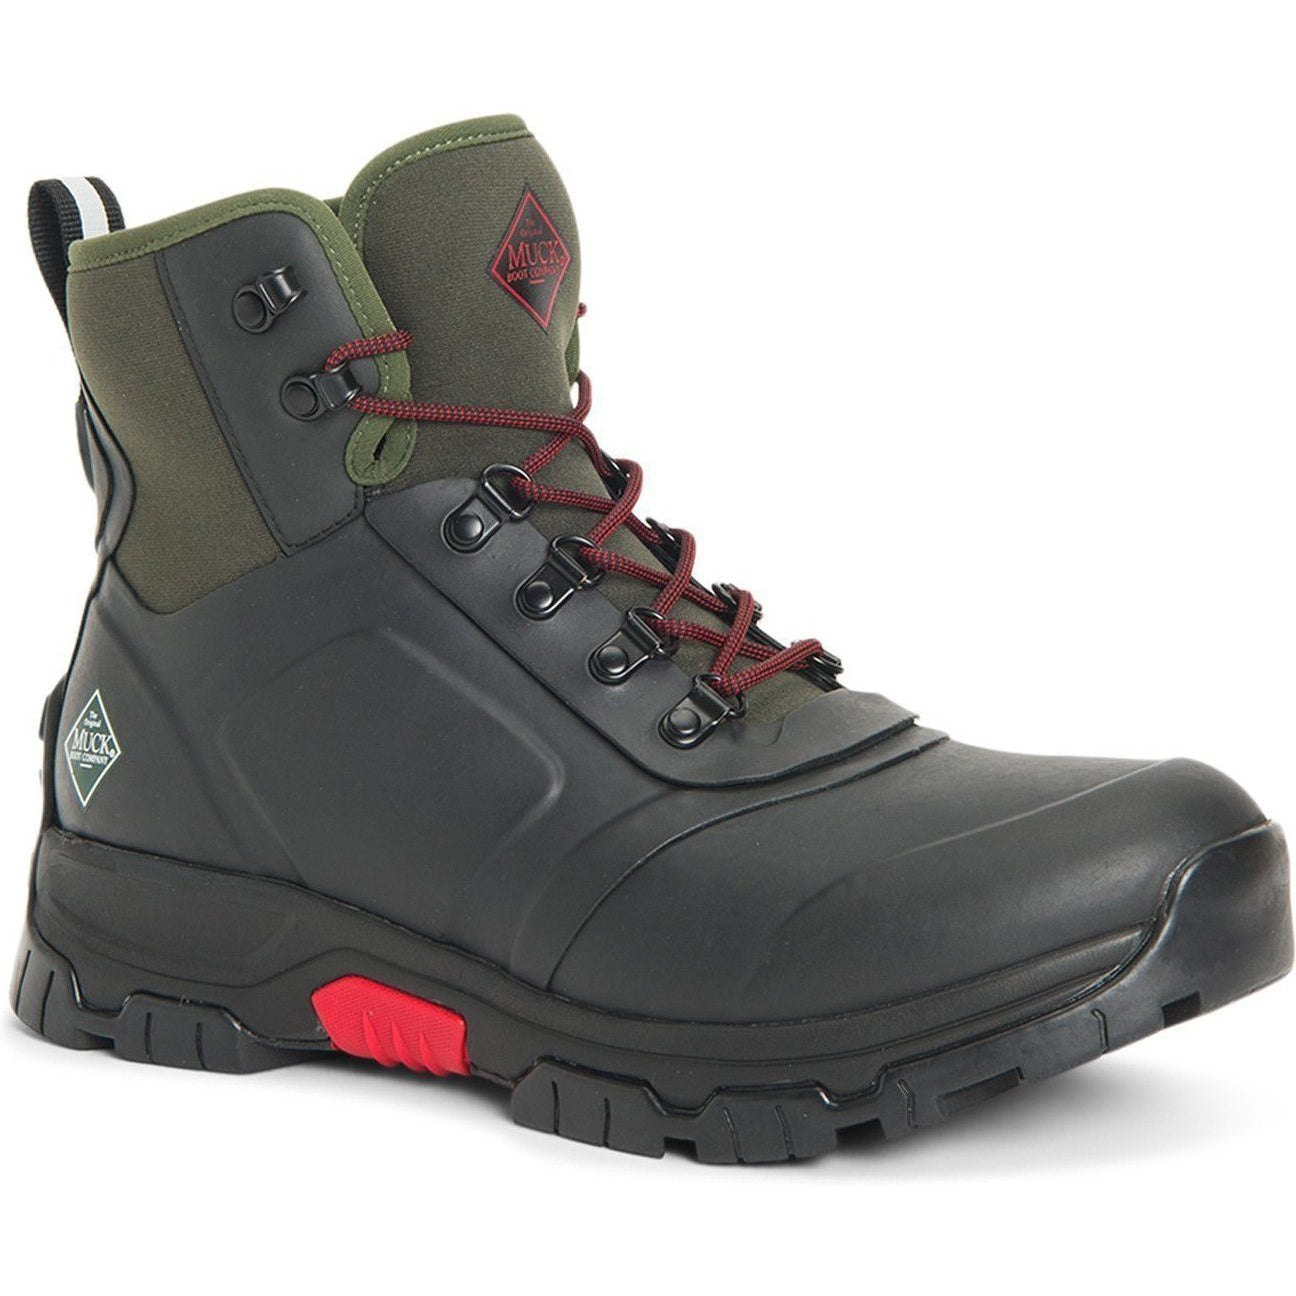 Muck Men's Apex Lace Up Waterproof Outdoor Boot - Black - AXML-000 7 / Black - Overlook Boots